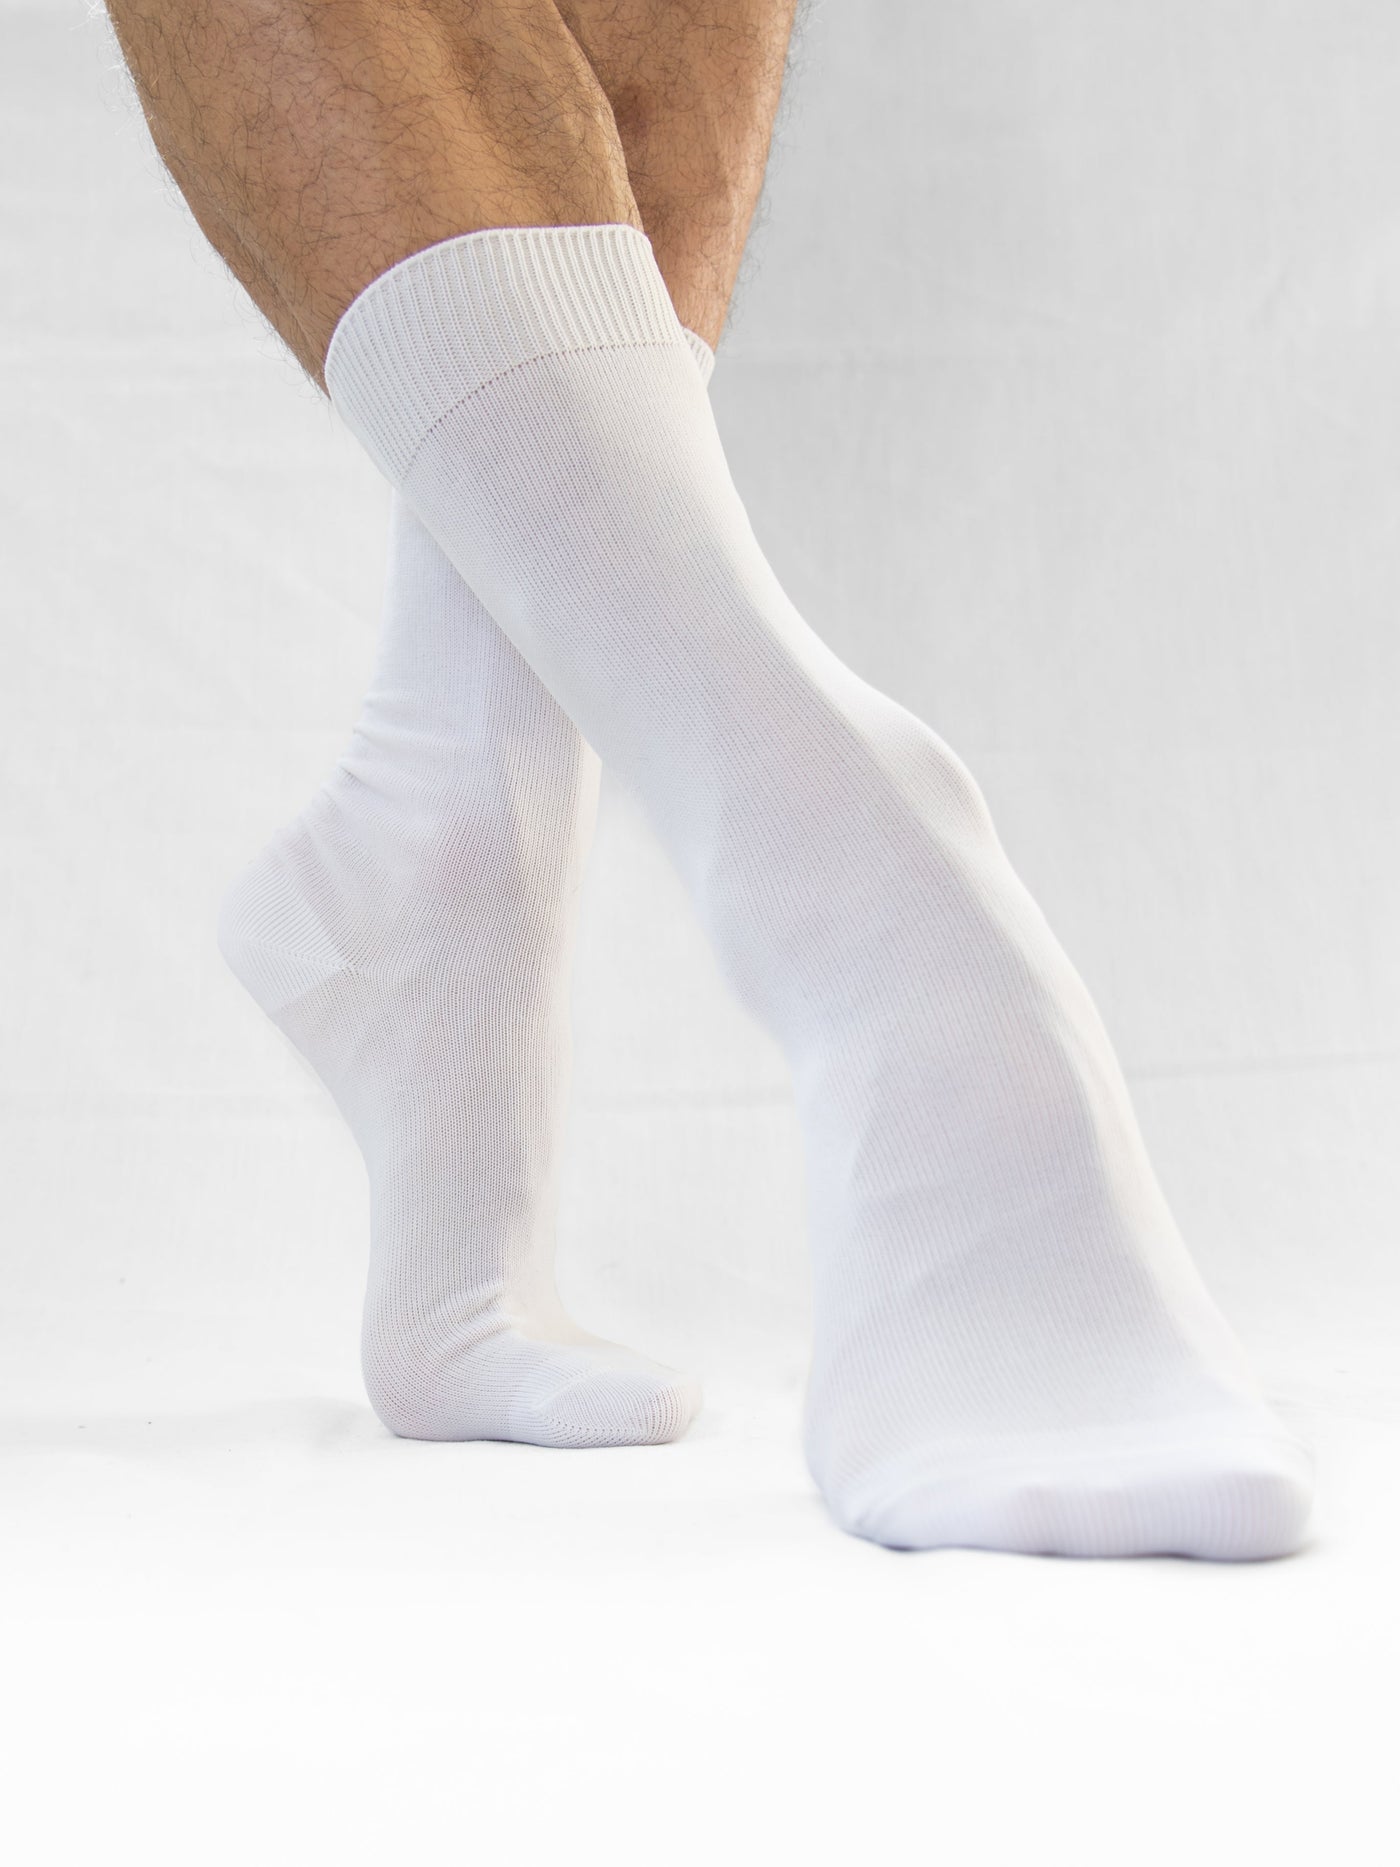 Ballet socks for men and boys